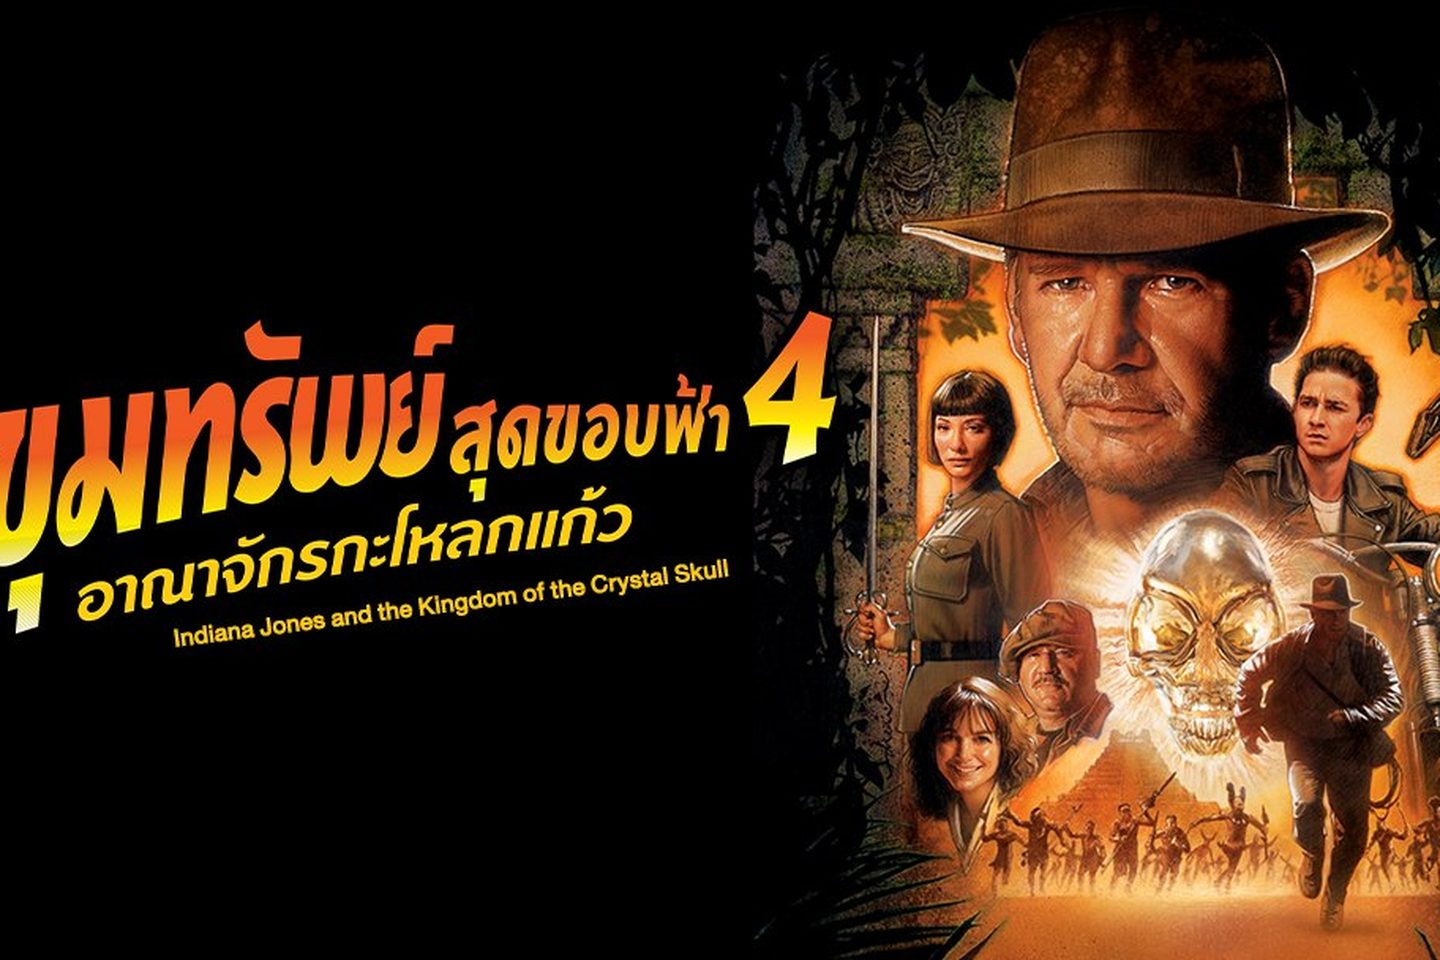 ดูหนัง Indiana Jones ขุมทรัพย์สุดขอบฟ้า 4 อาณาจักรกะโหลกแก้ว พากย์ไทย  (2008) เต็มเรื่อง